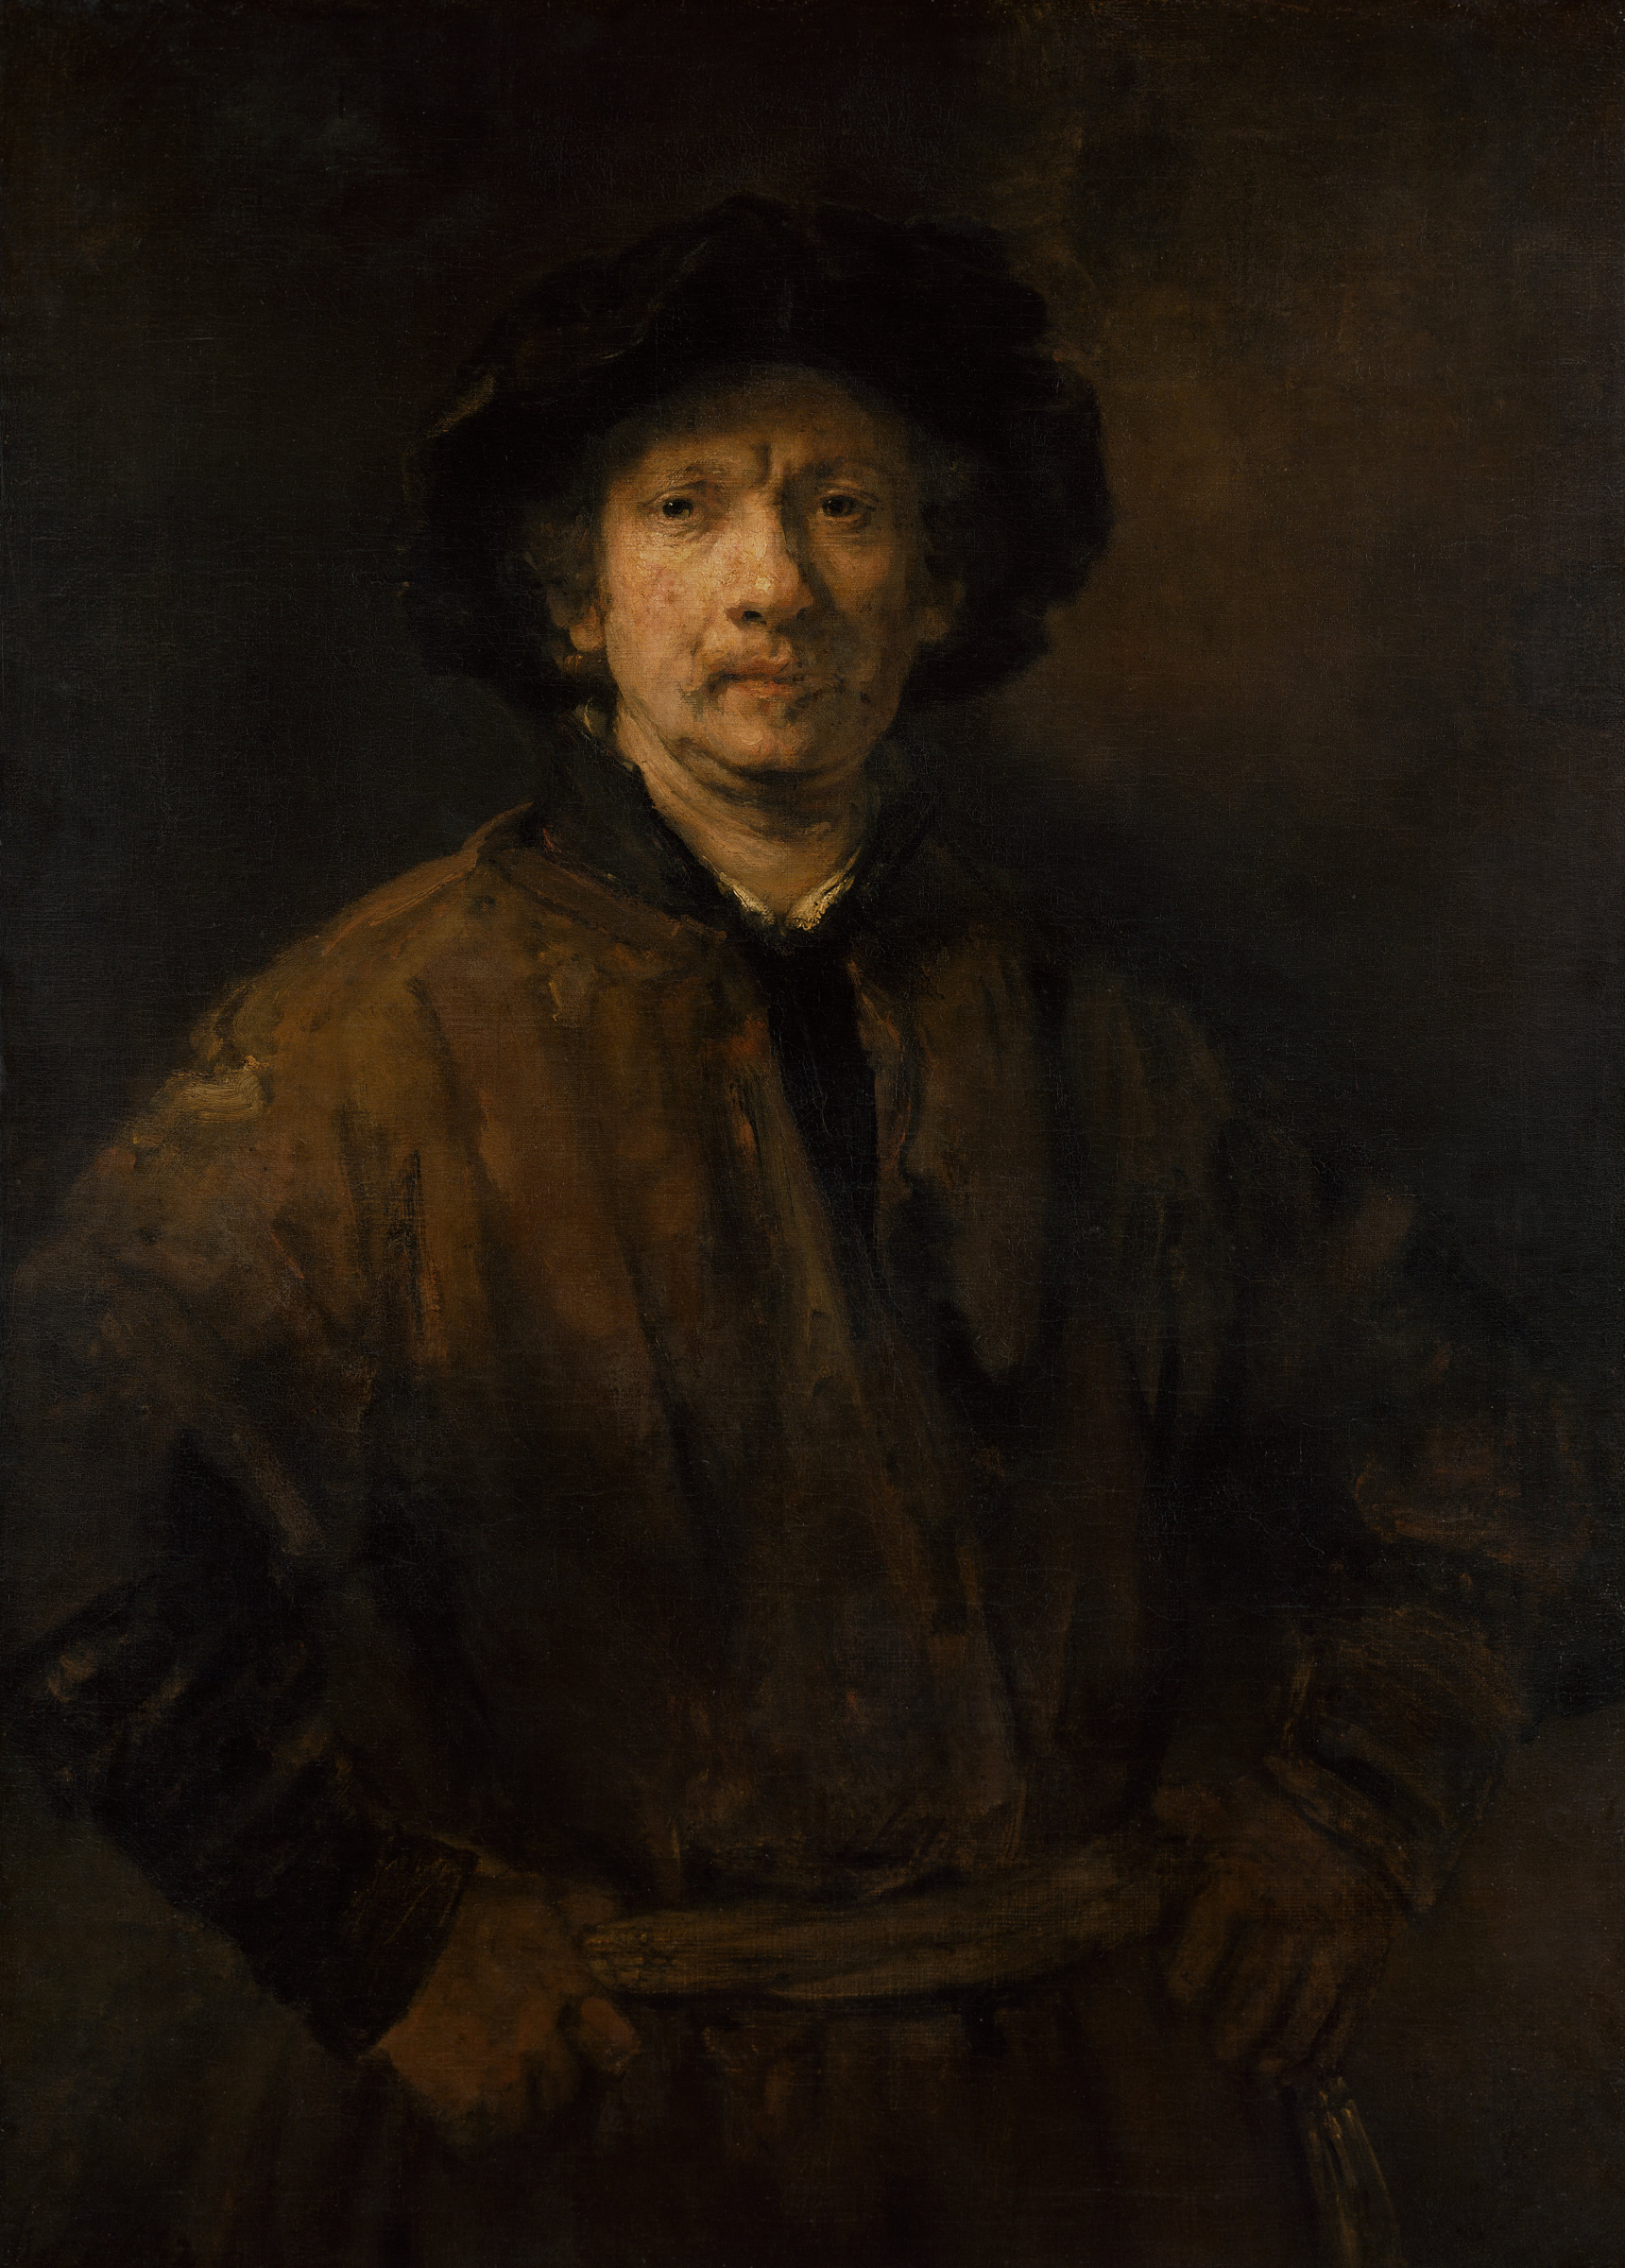 Все картины художника Рембрандта, галерея работ